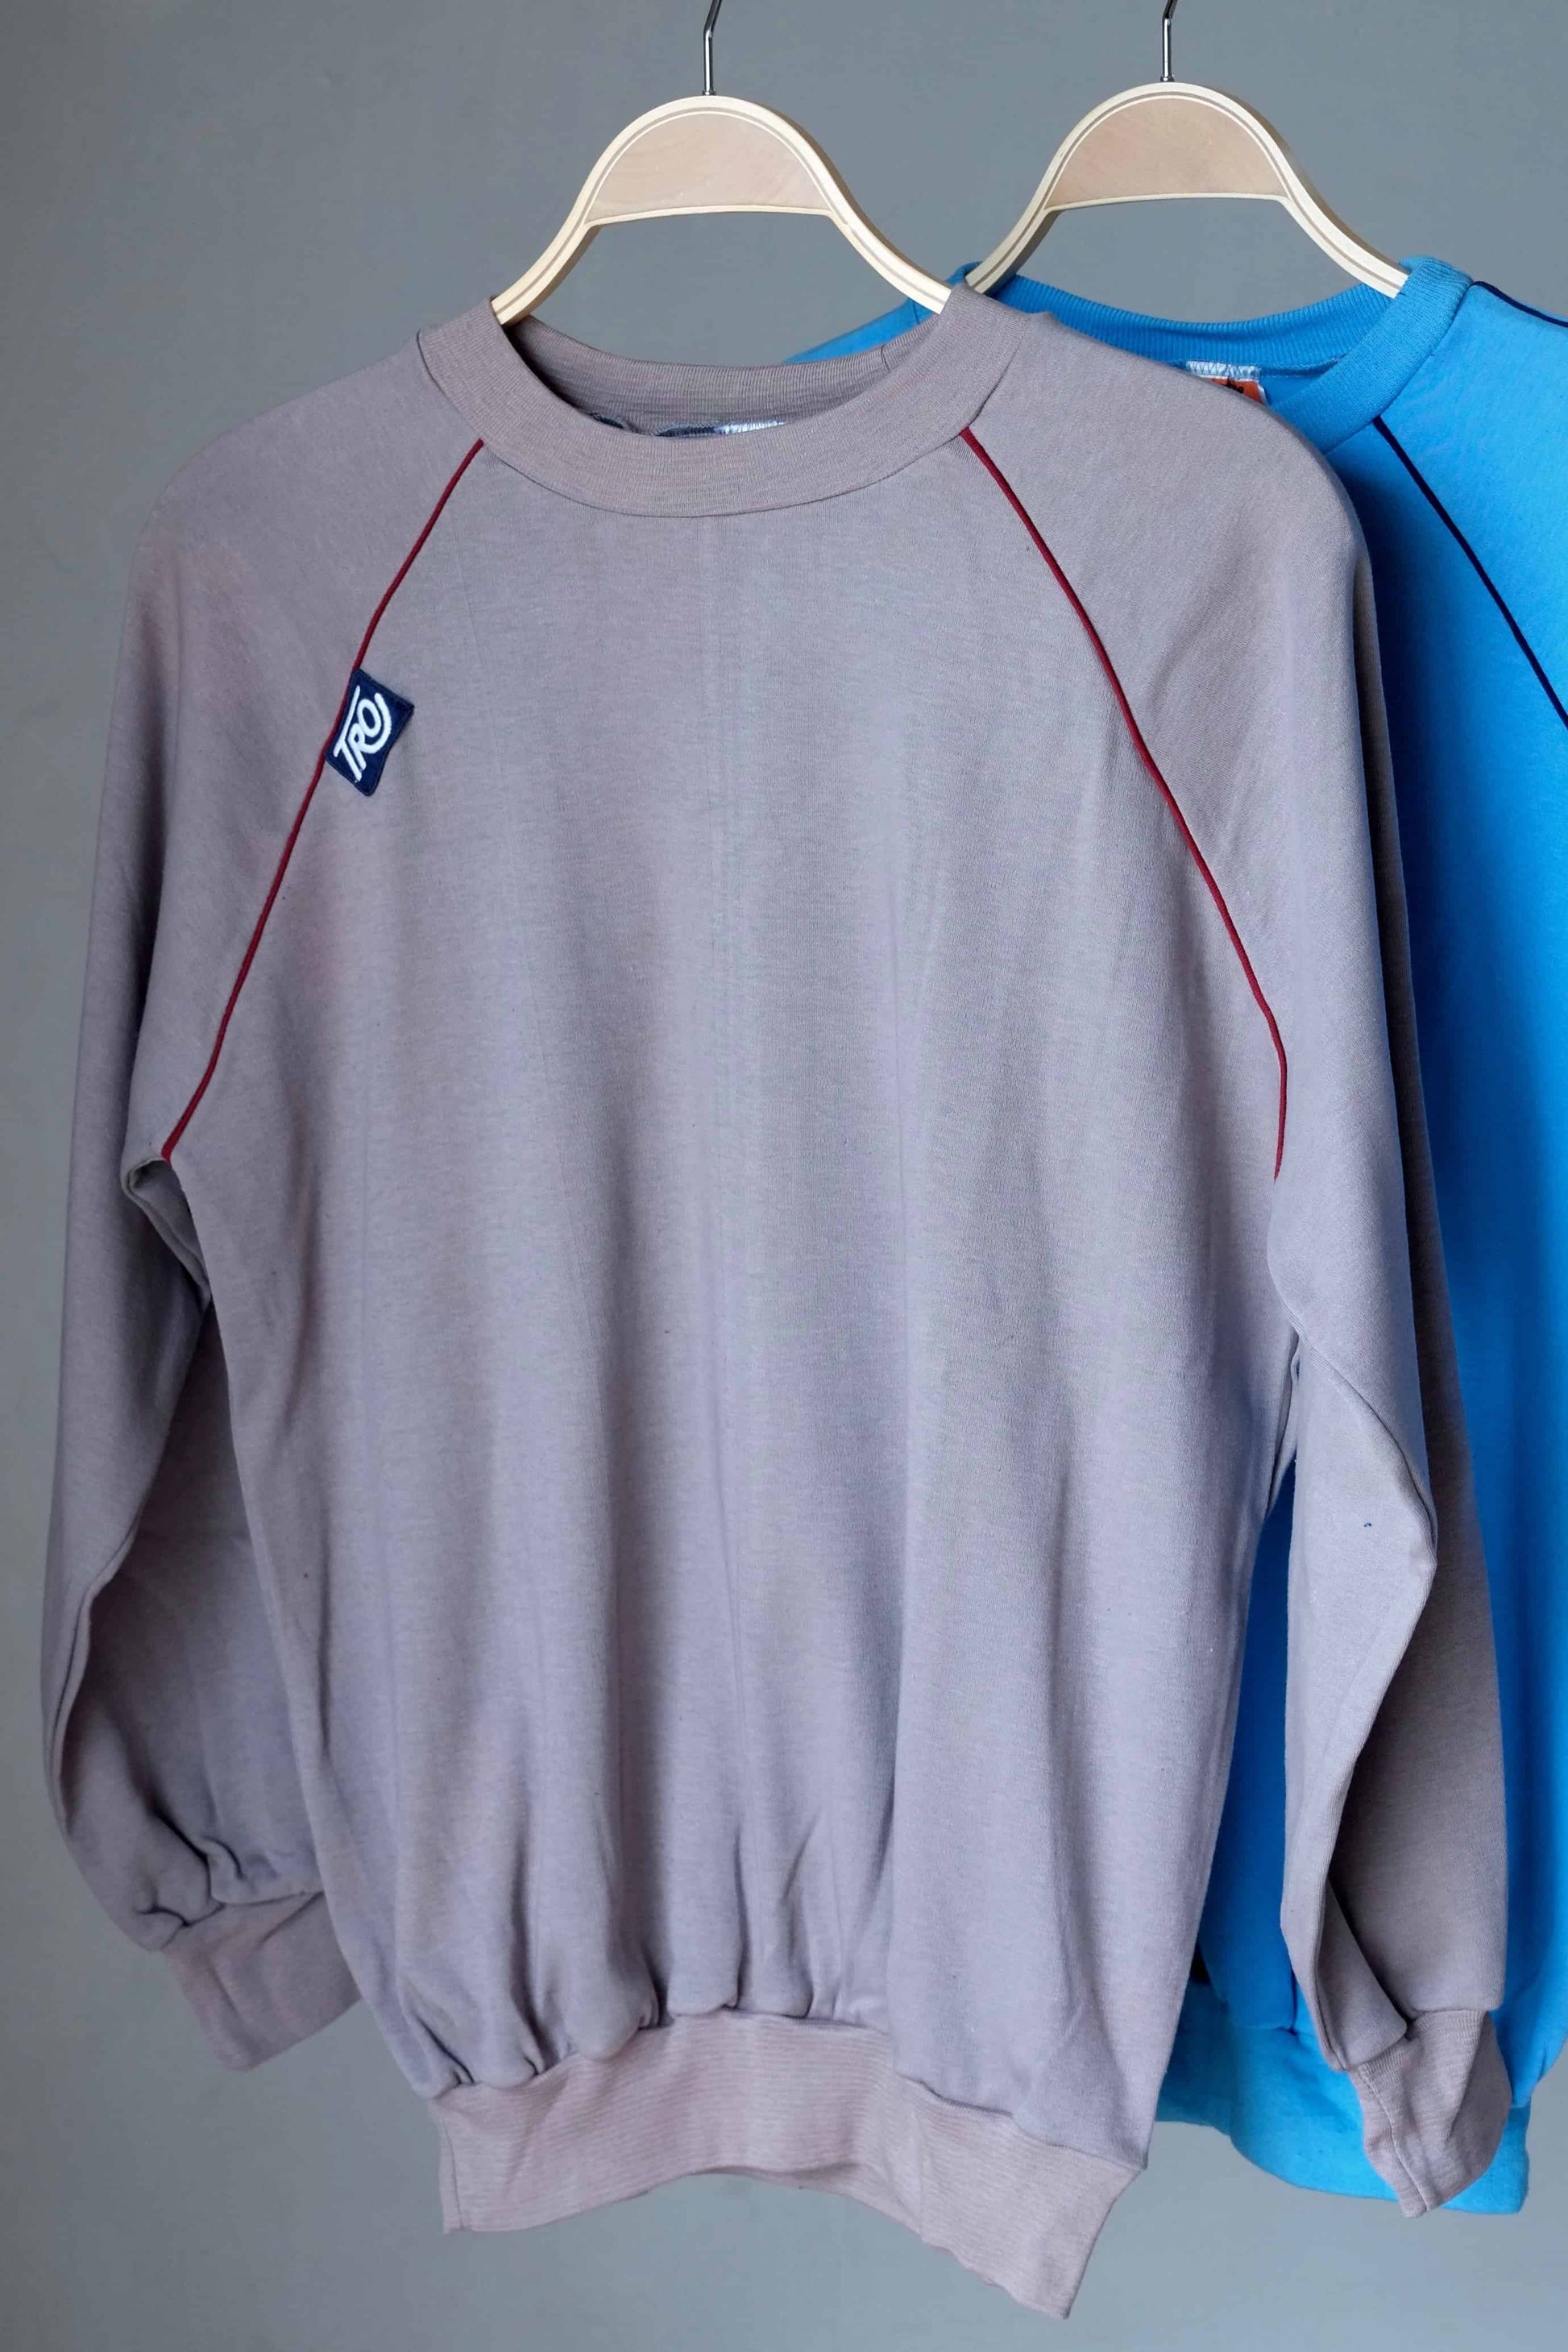 Raglan Sleeves 80's Sweatshirt grey